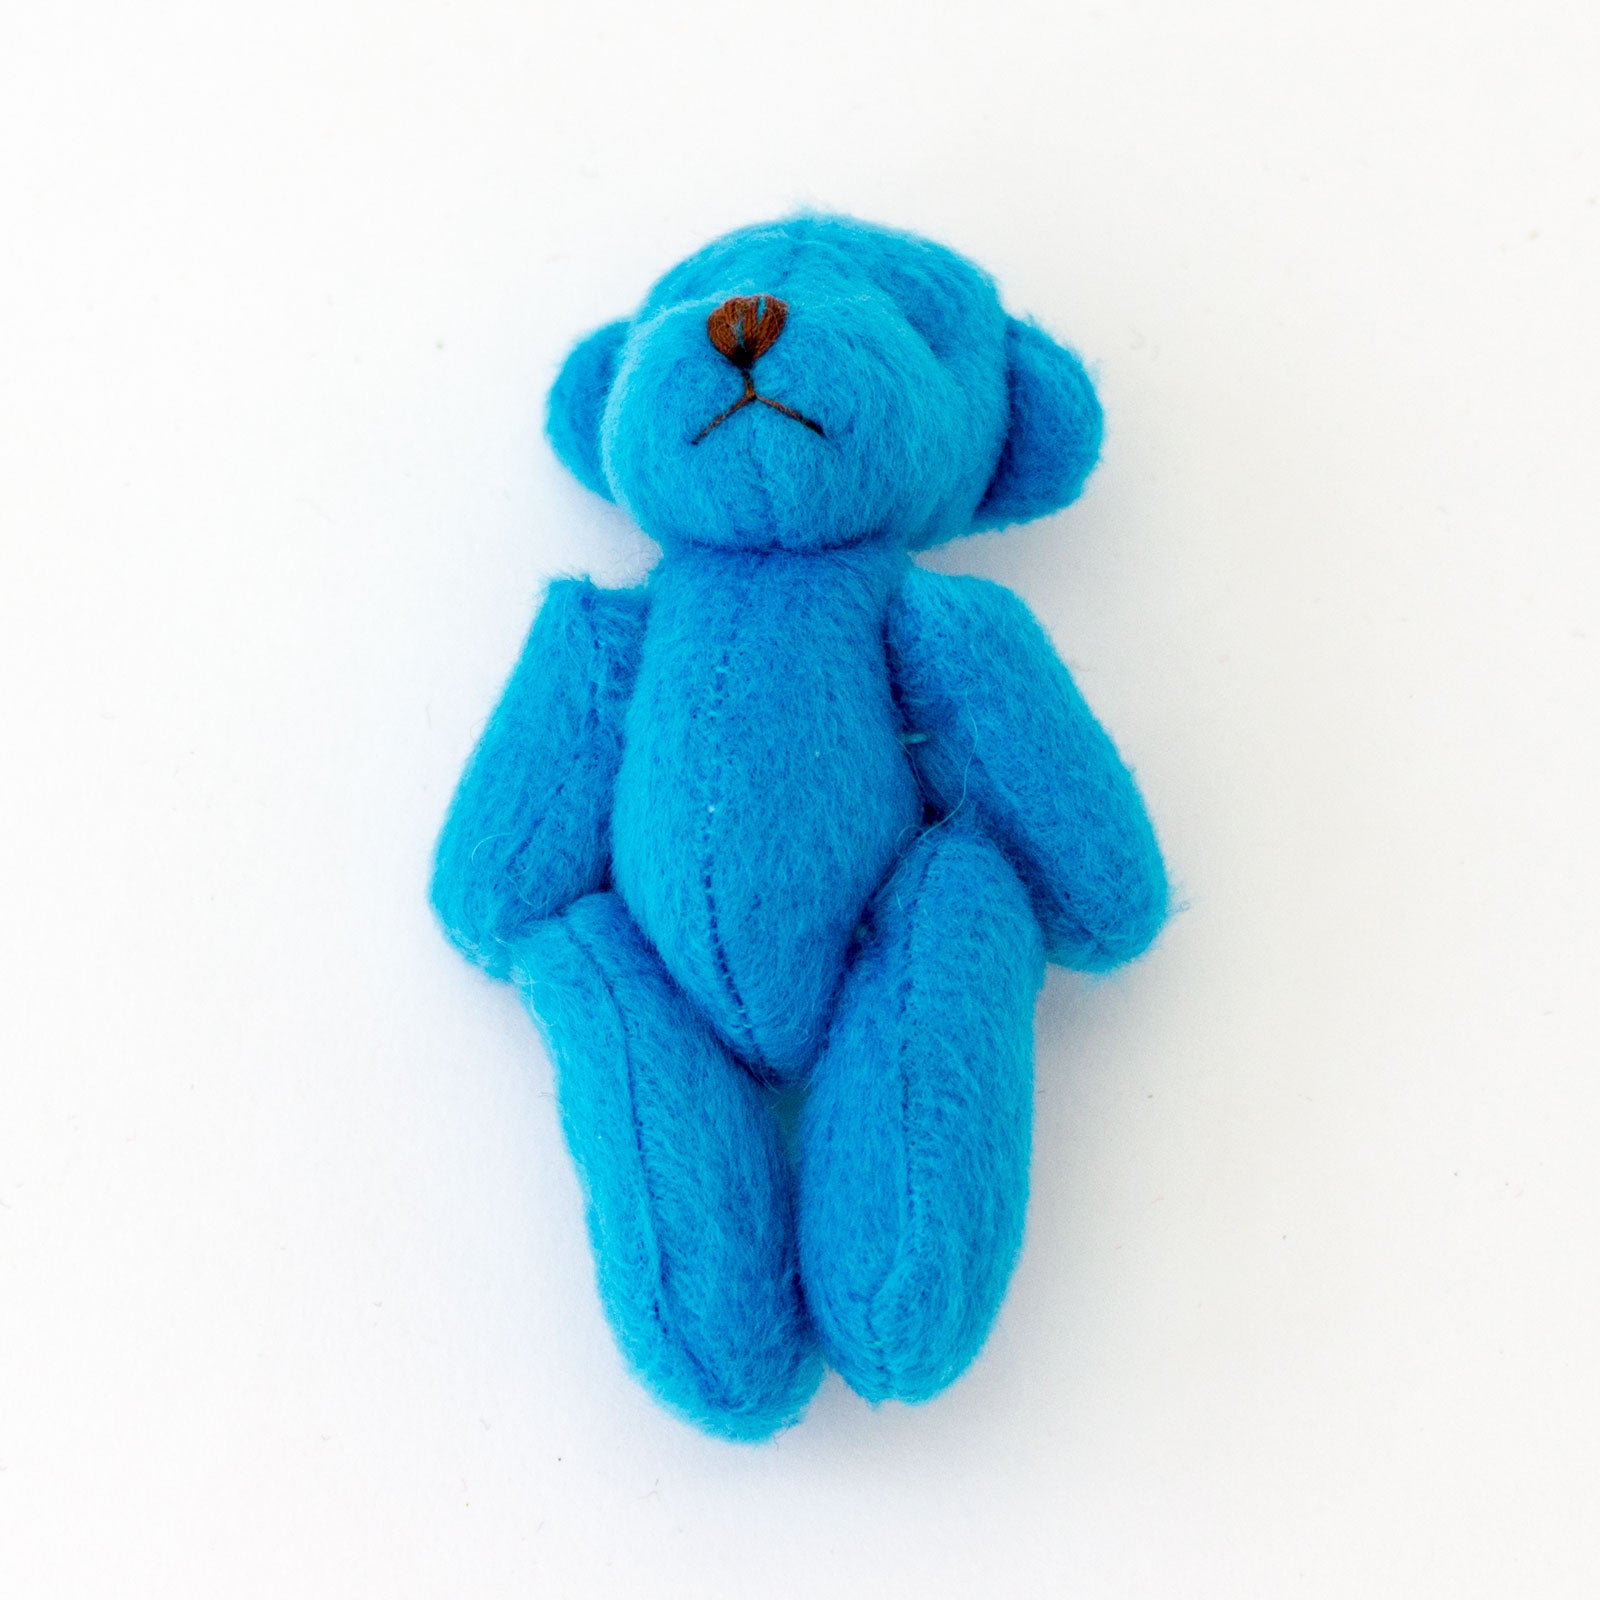 Small BLUE Teddy Bears X 20 - Cute Soft Adorable